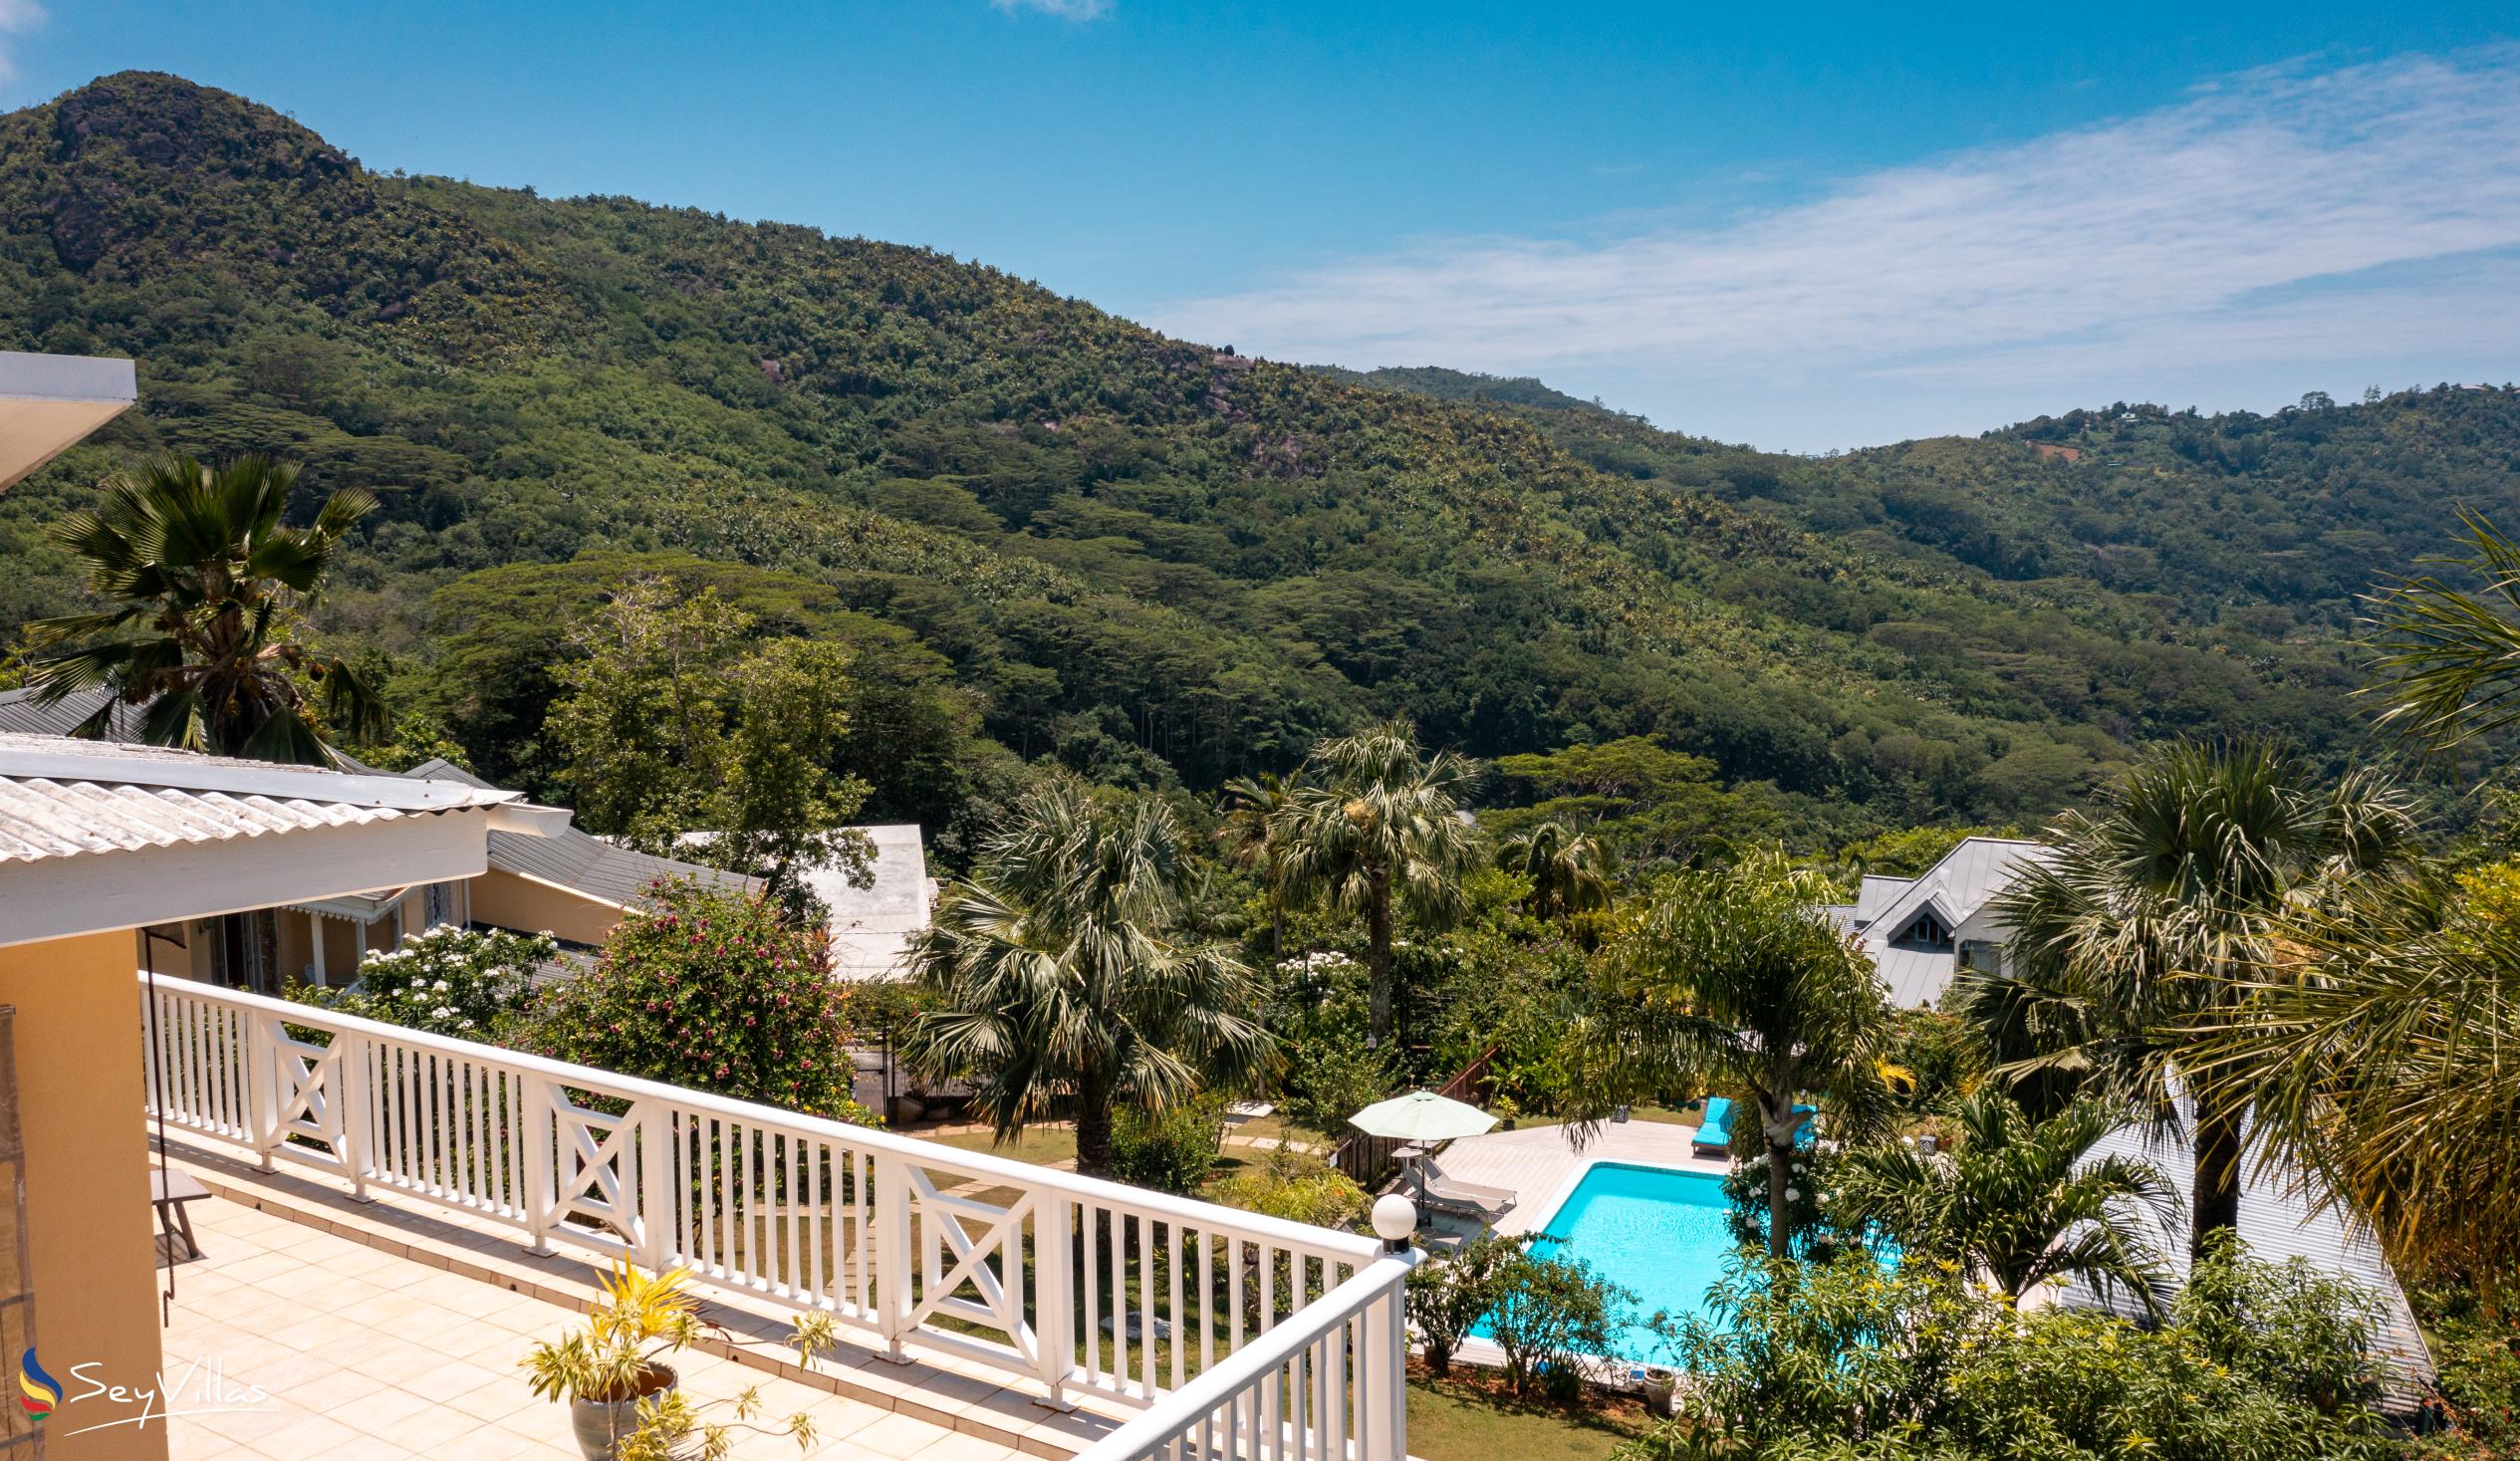 Foto 4: Residence Monte Cristo - Aussenbereich - Mahé (Seychellen)